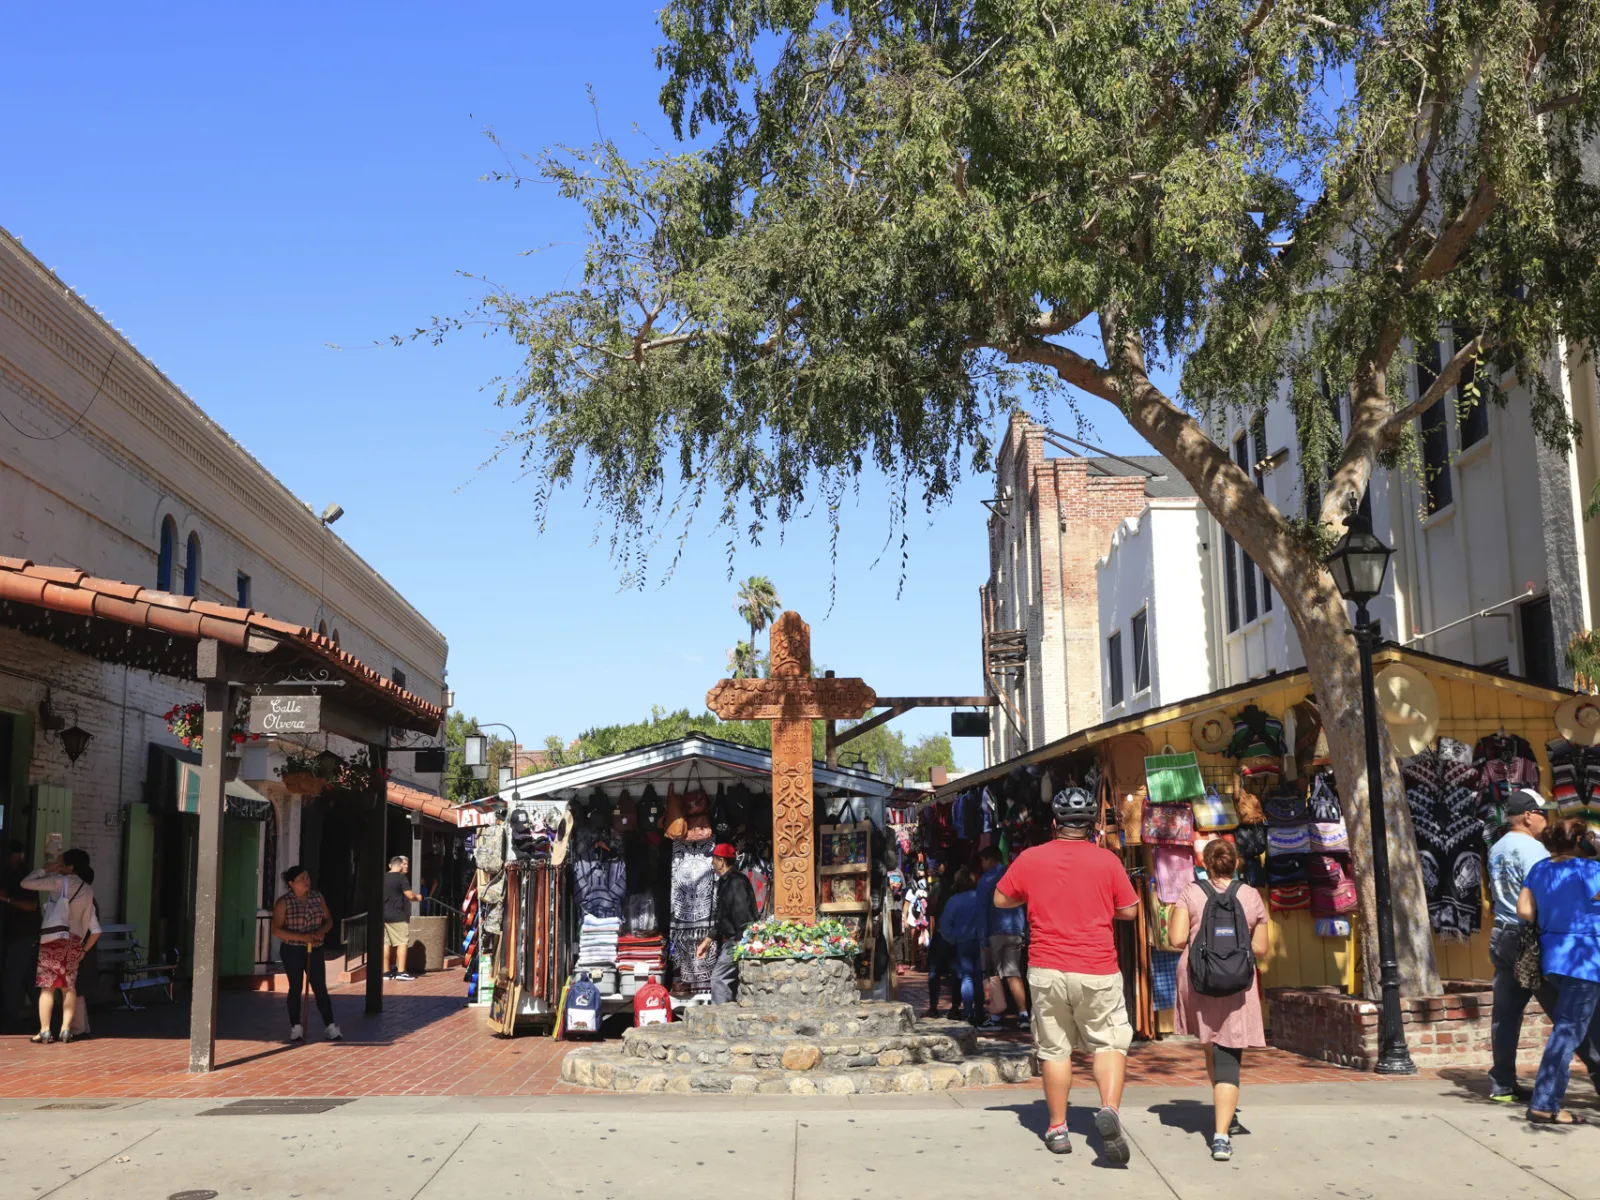 Discover Olvera Street and Historic El Pueblo de Los Angeles | Discover